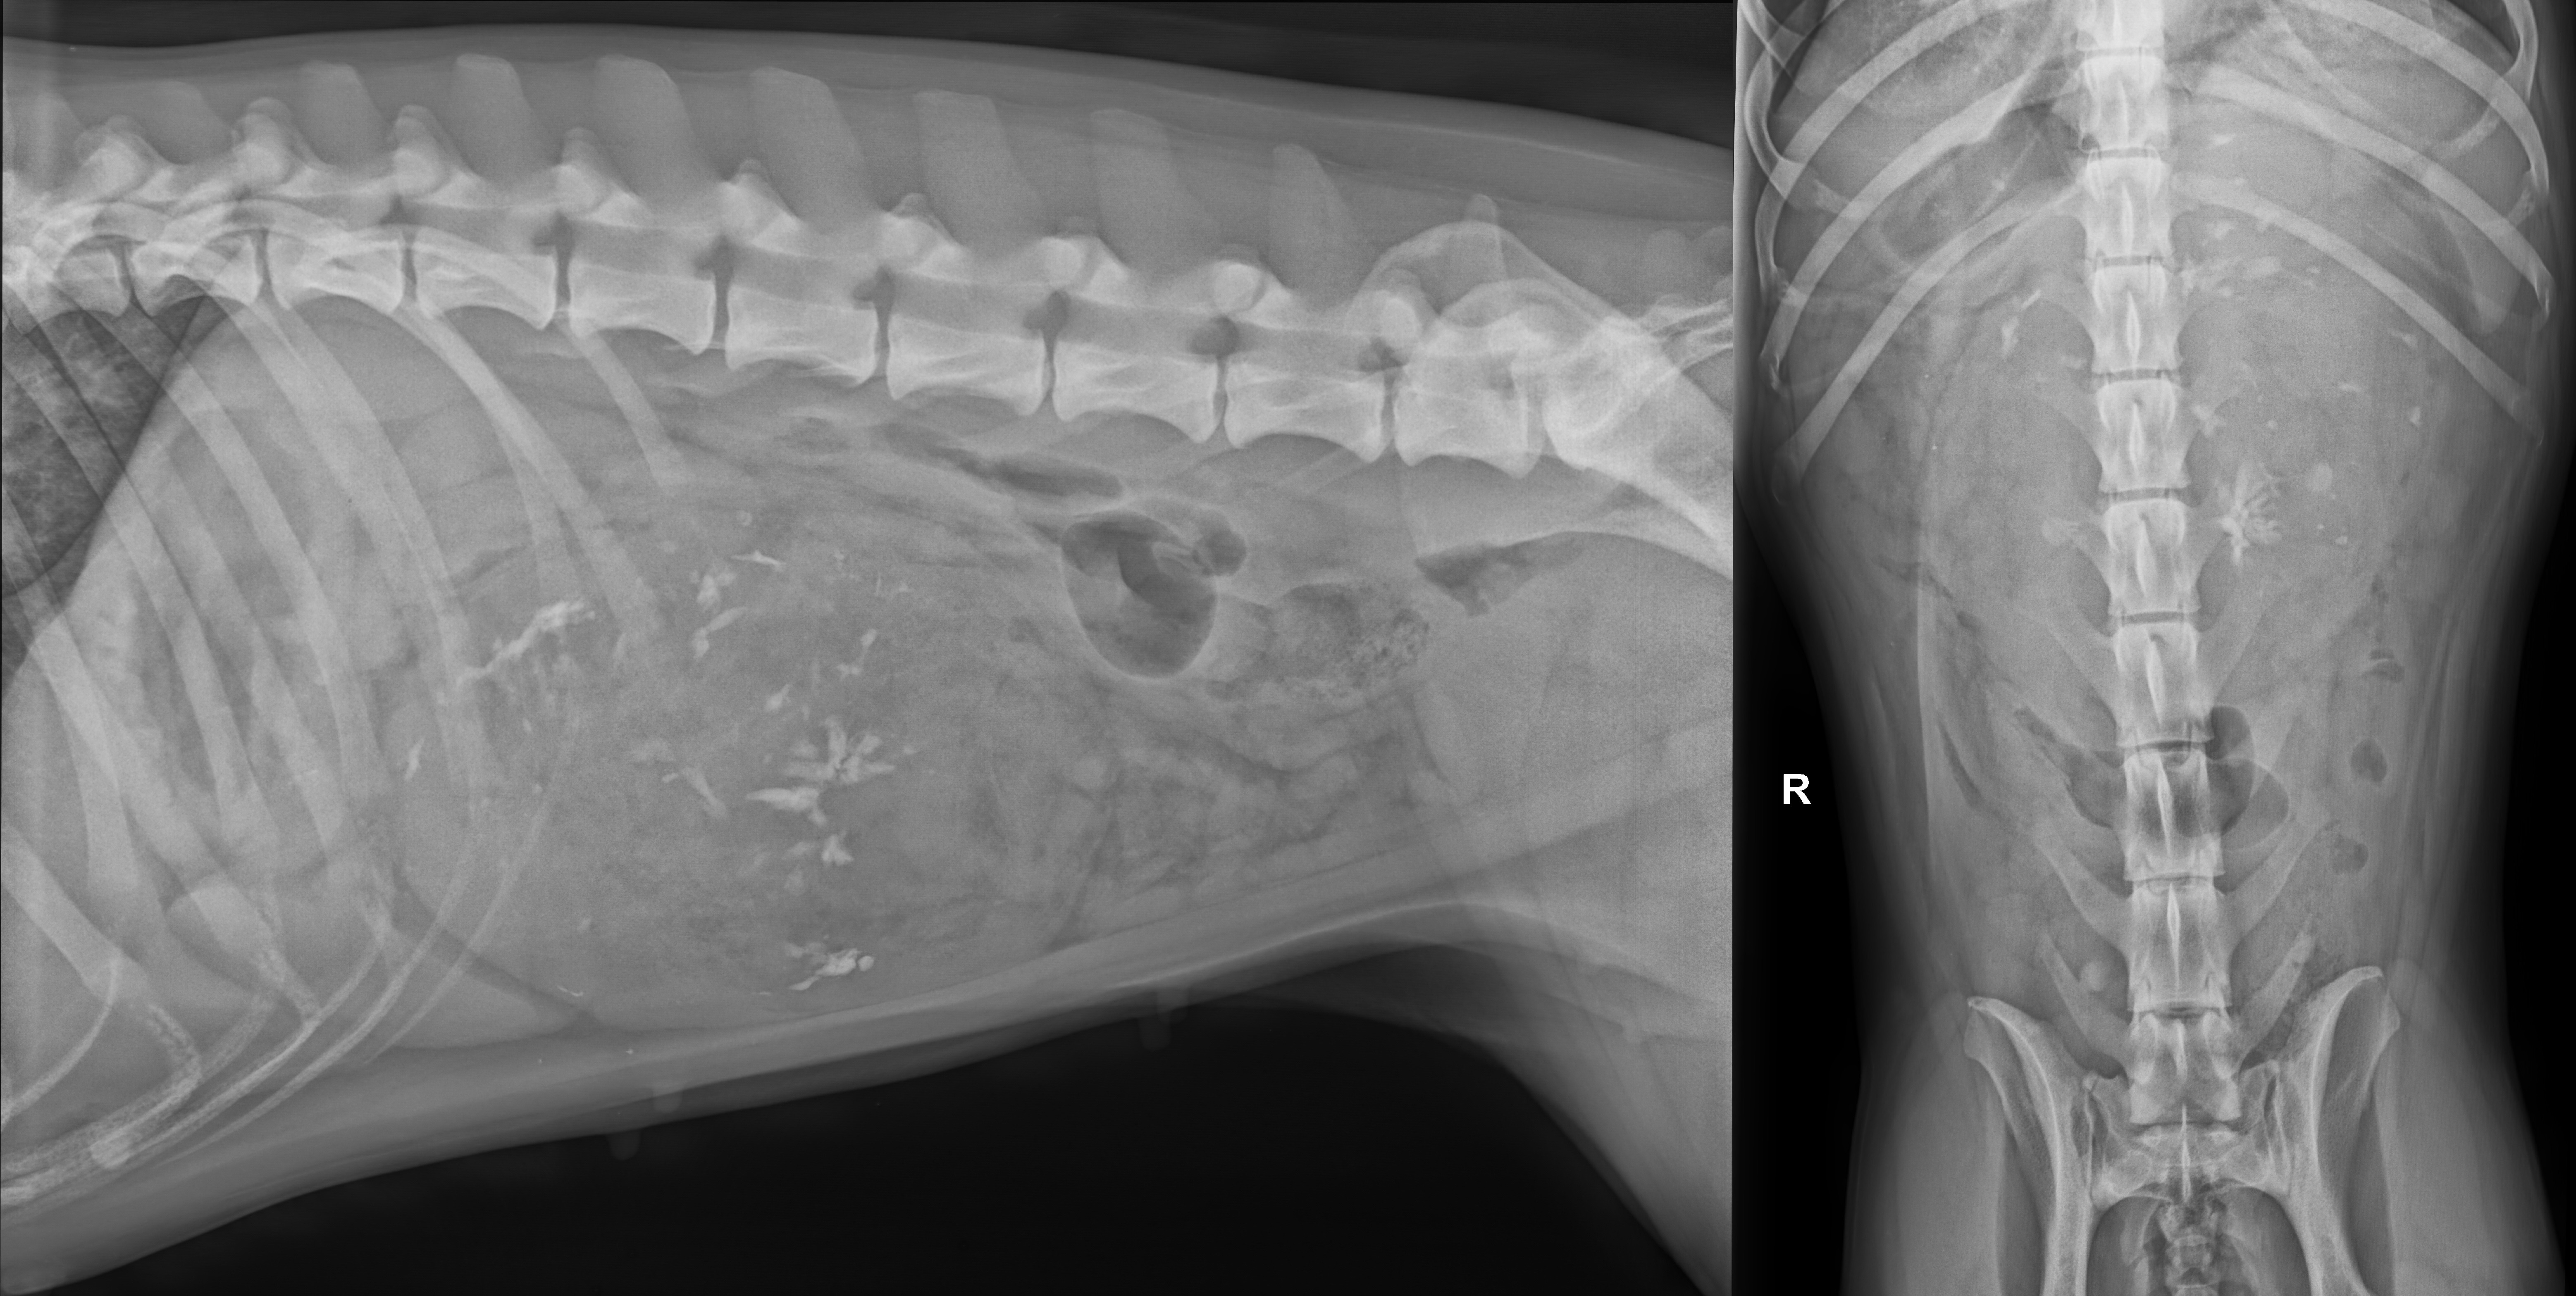 Röntgenbefund des Abdomens einer einjährigen Mischlingshündin in zwei Ebenen